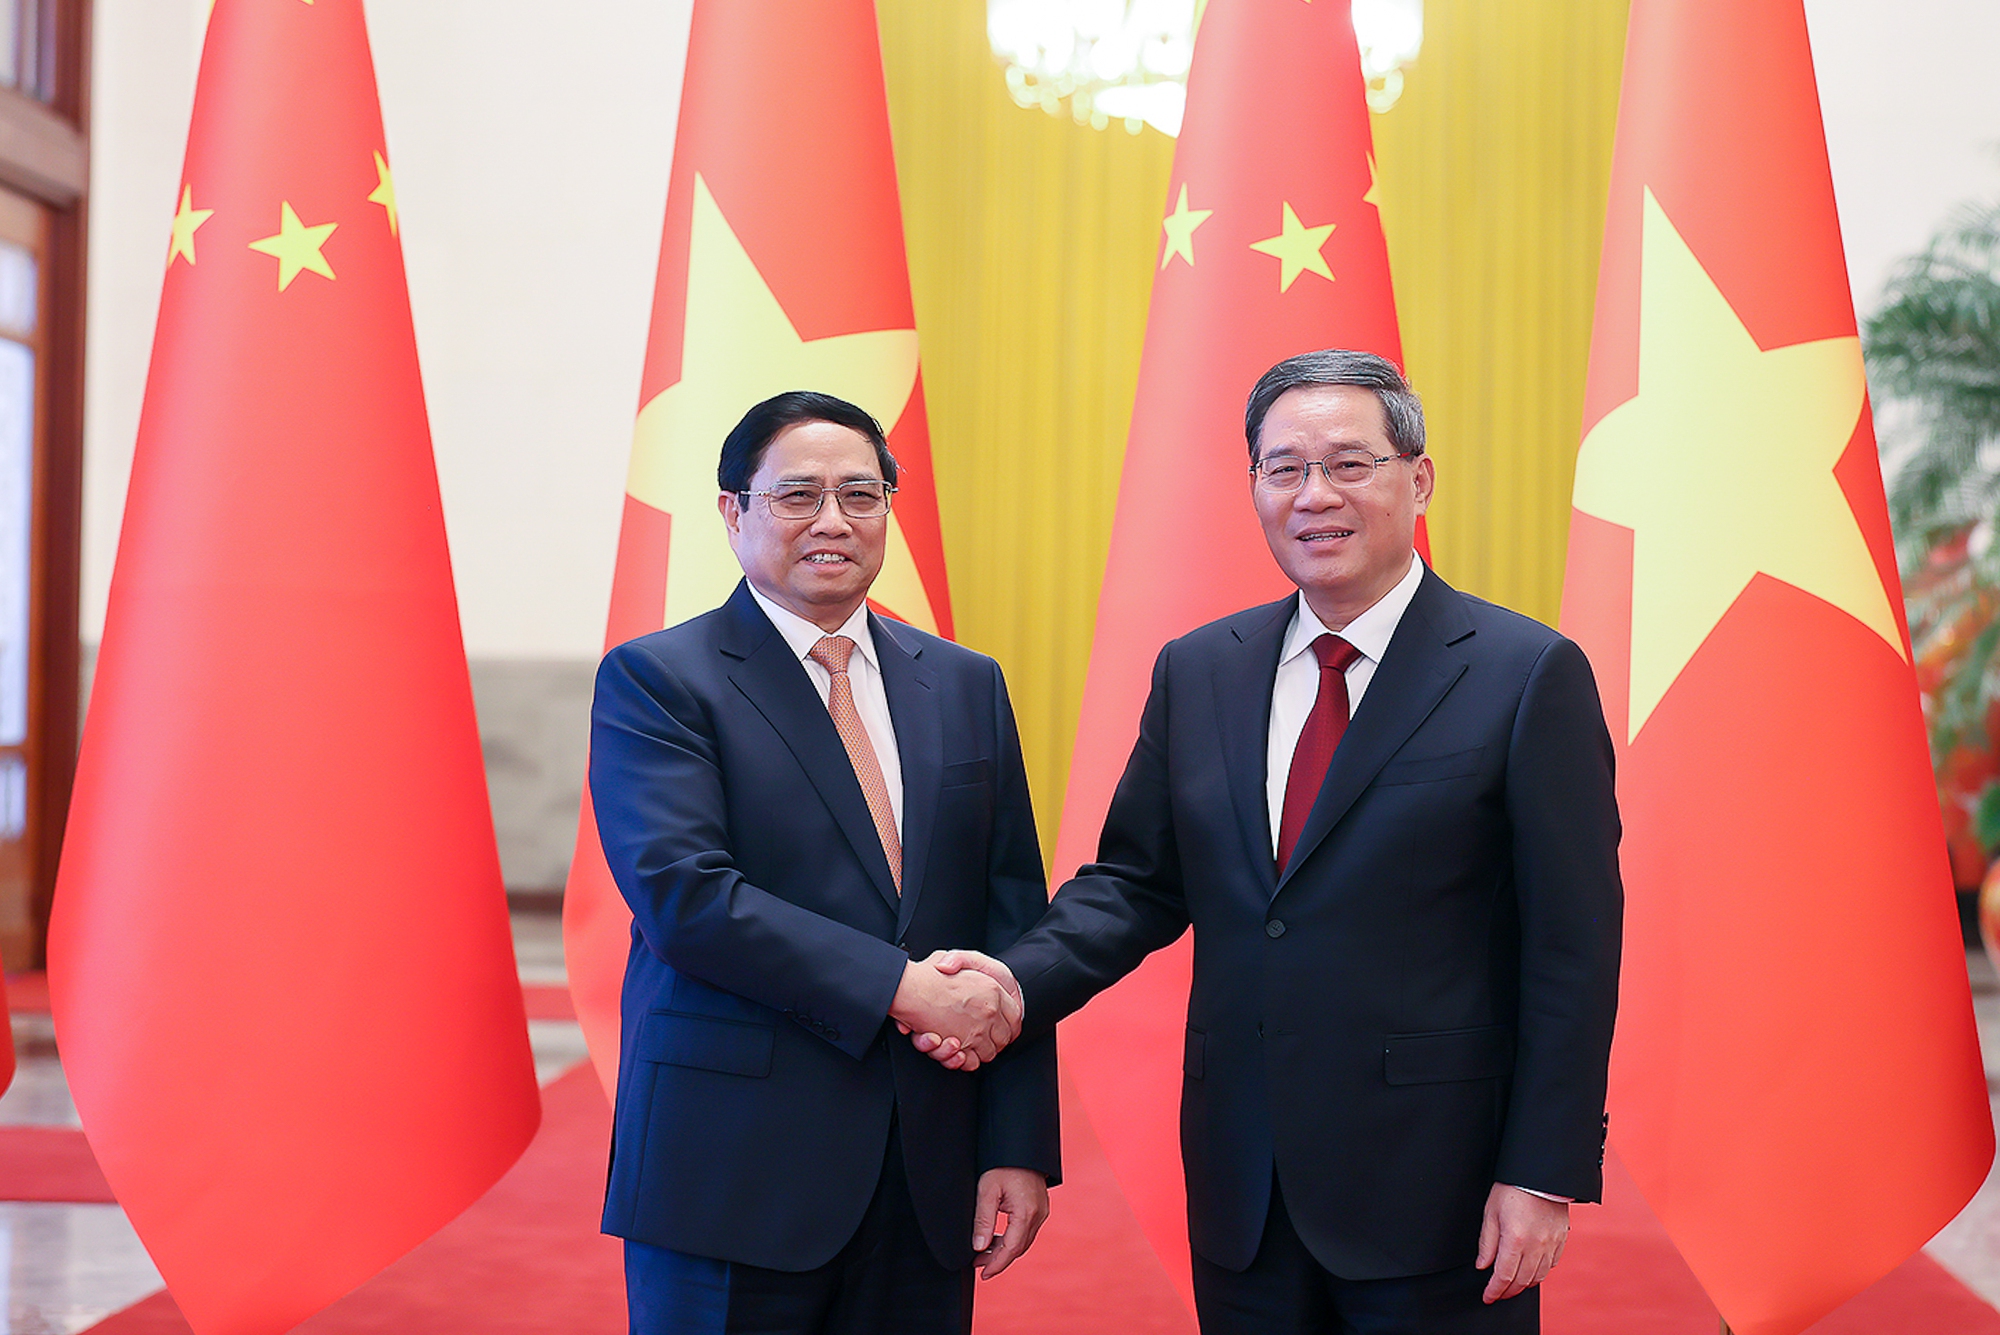 Chùm ảnh: Lễ đón chính thức Thủ tướng Chính phủ Phạm Minh Chính thăm Trung Quốc - Ảnh 1.